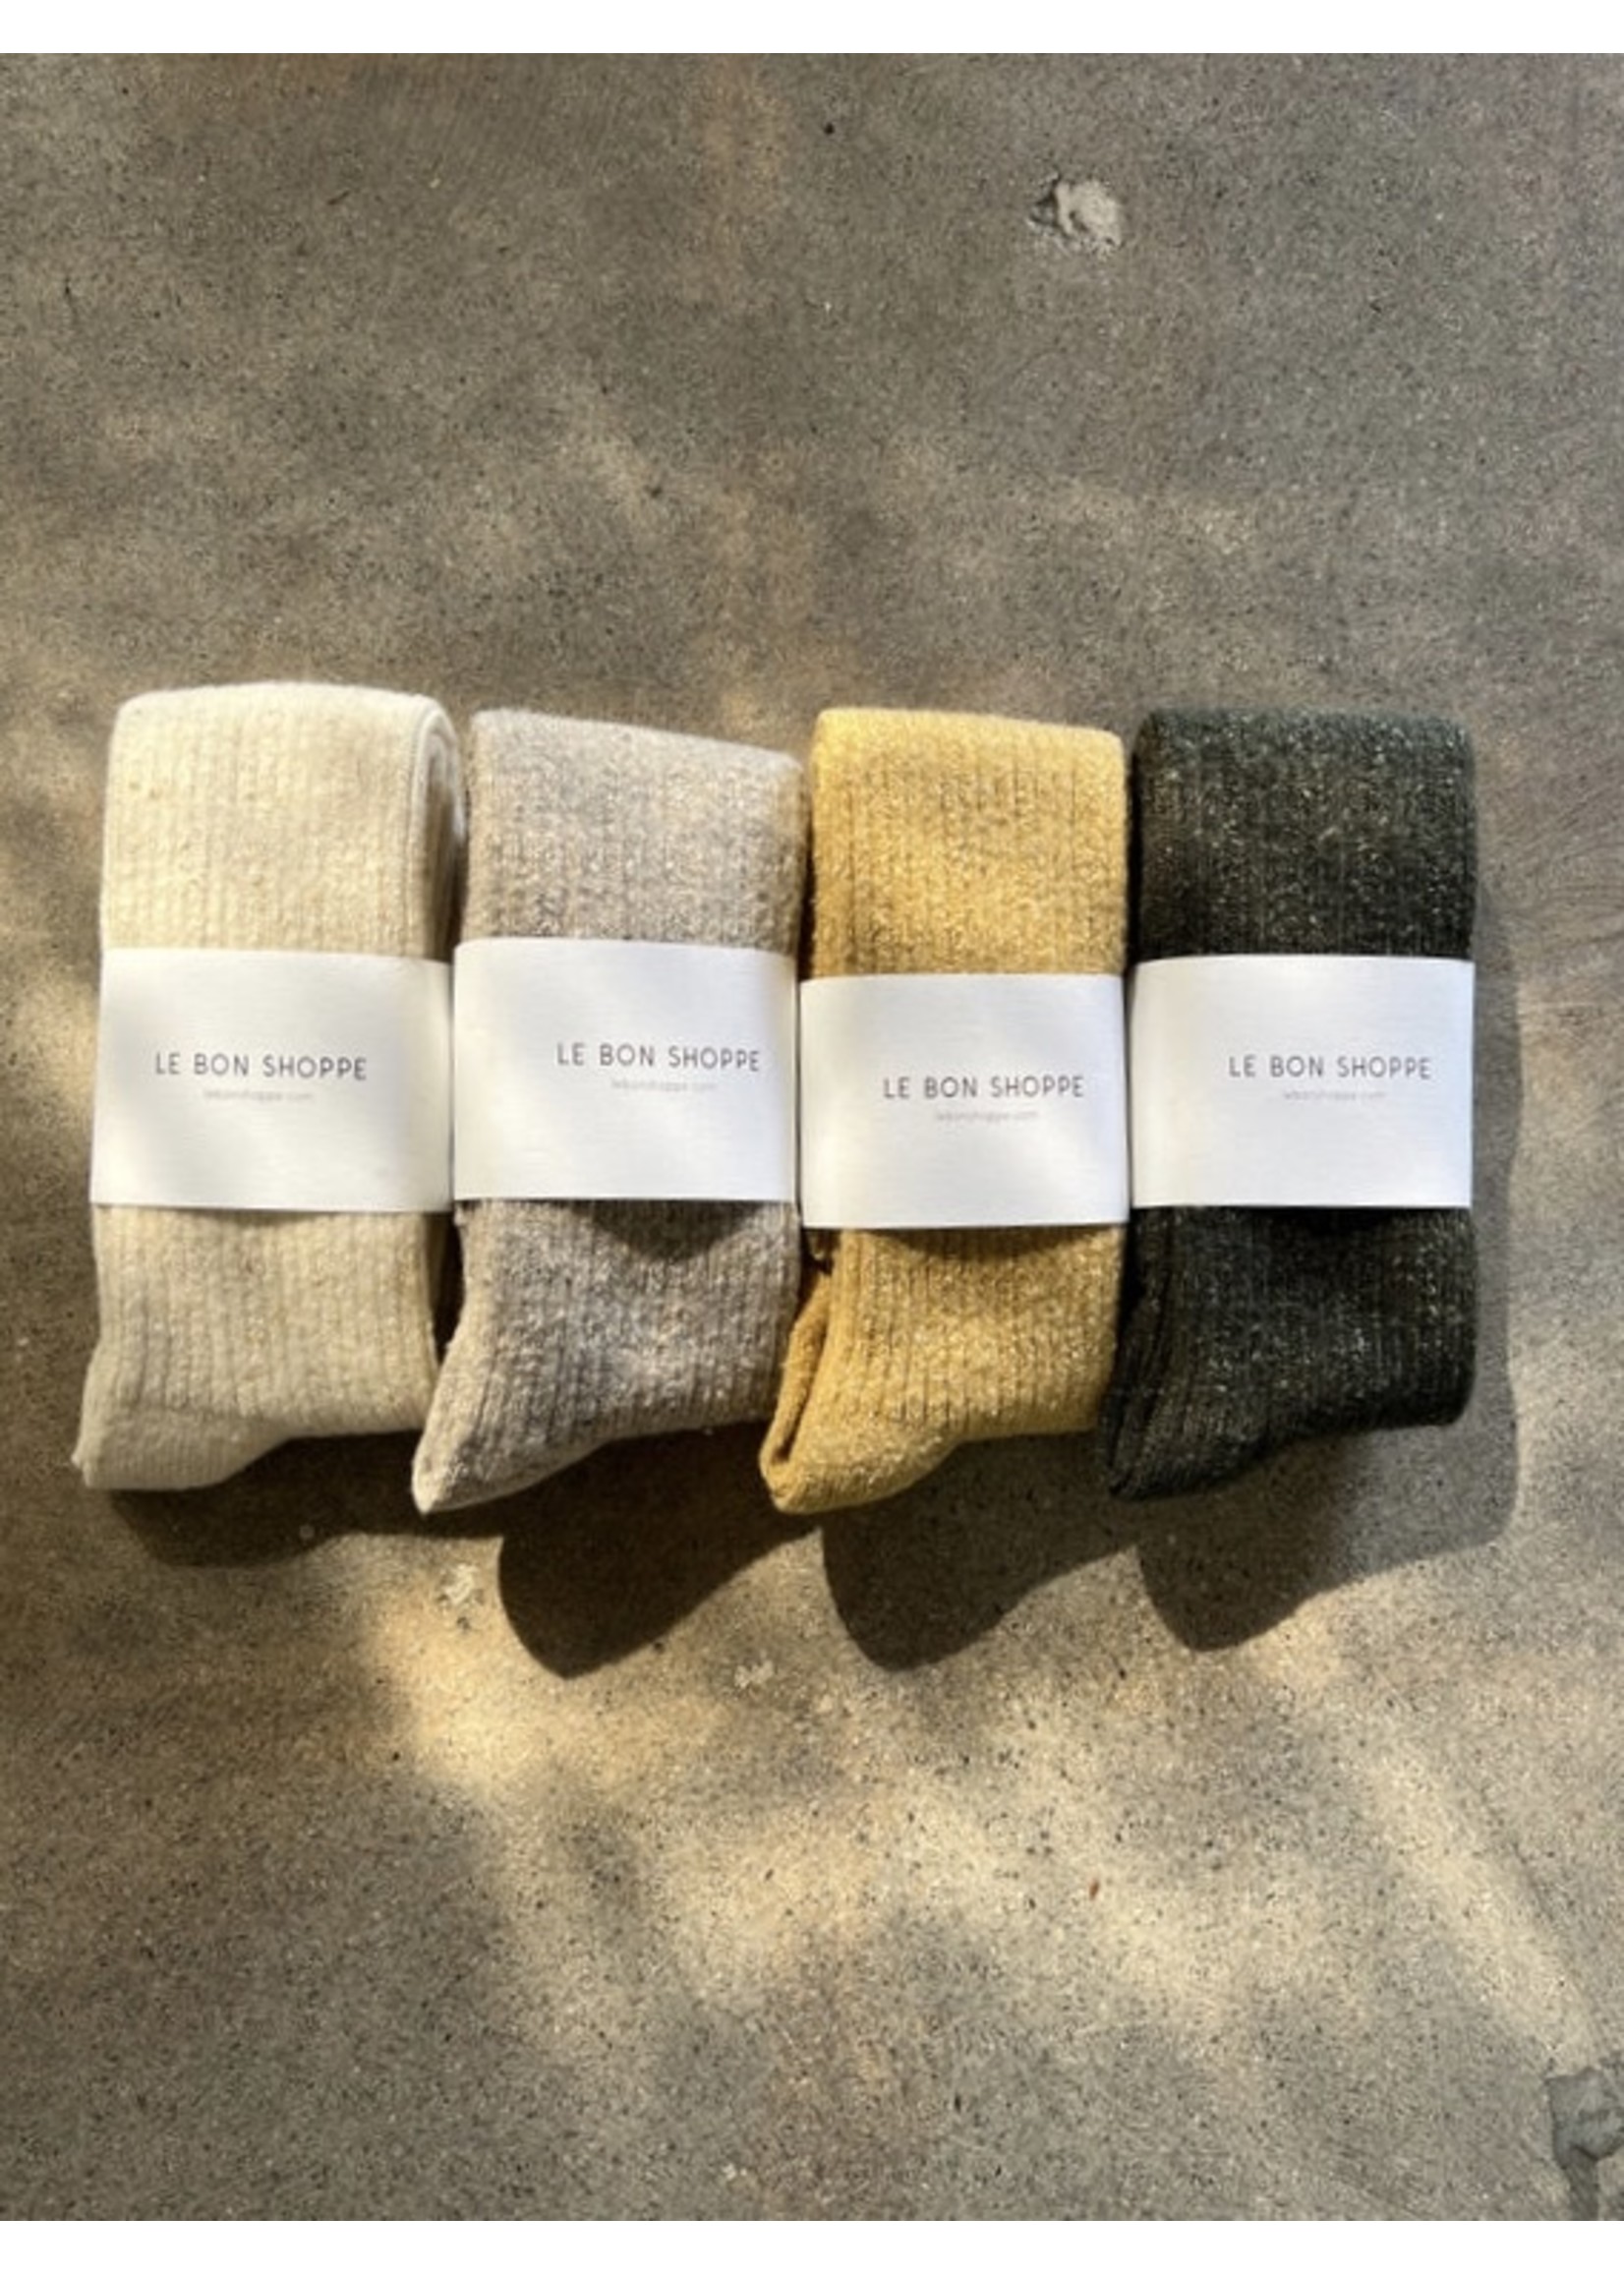 Le Bon Shoppe "Arctic" socks by Le Bon Shoppe